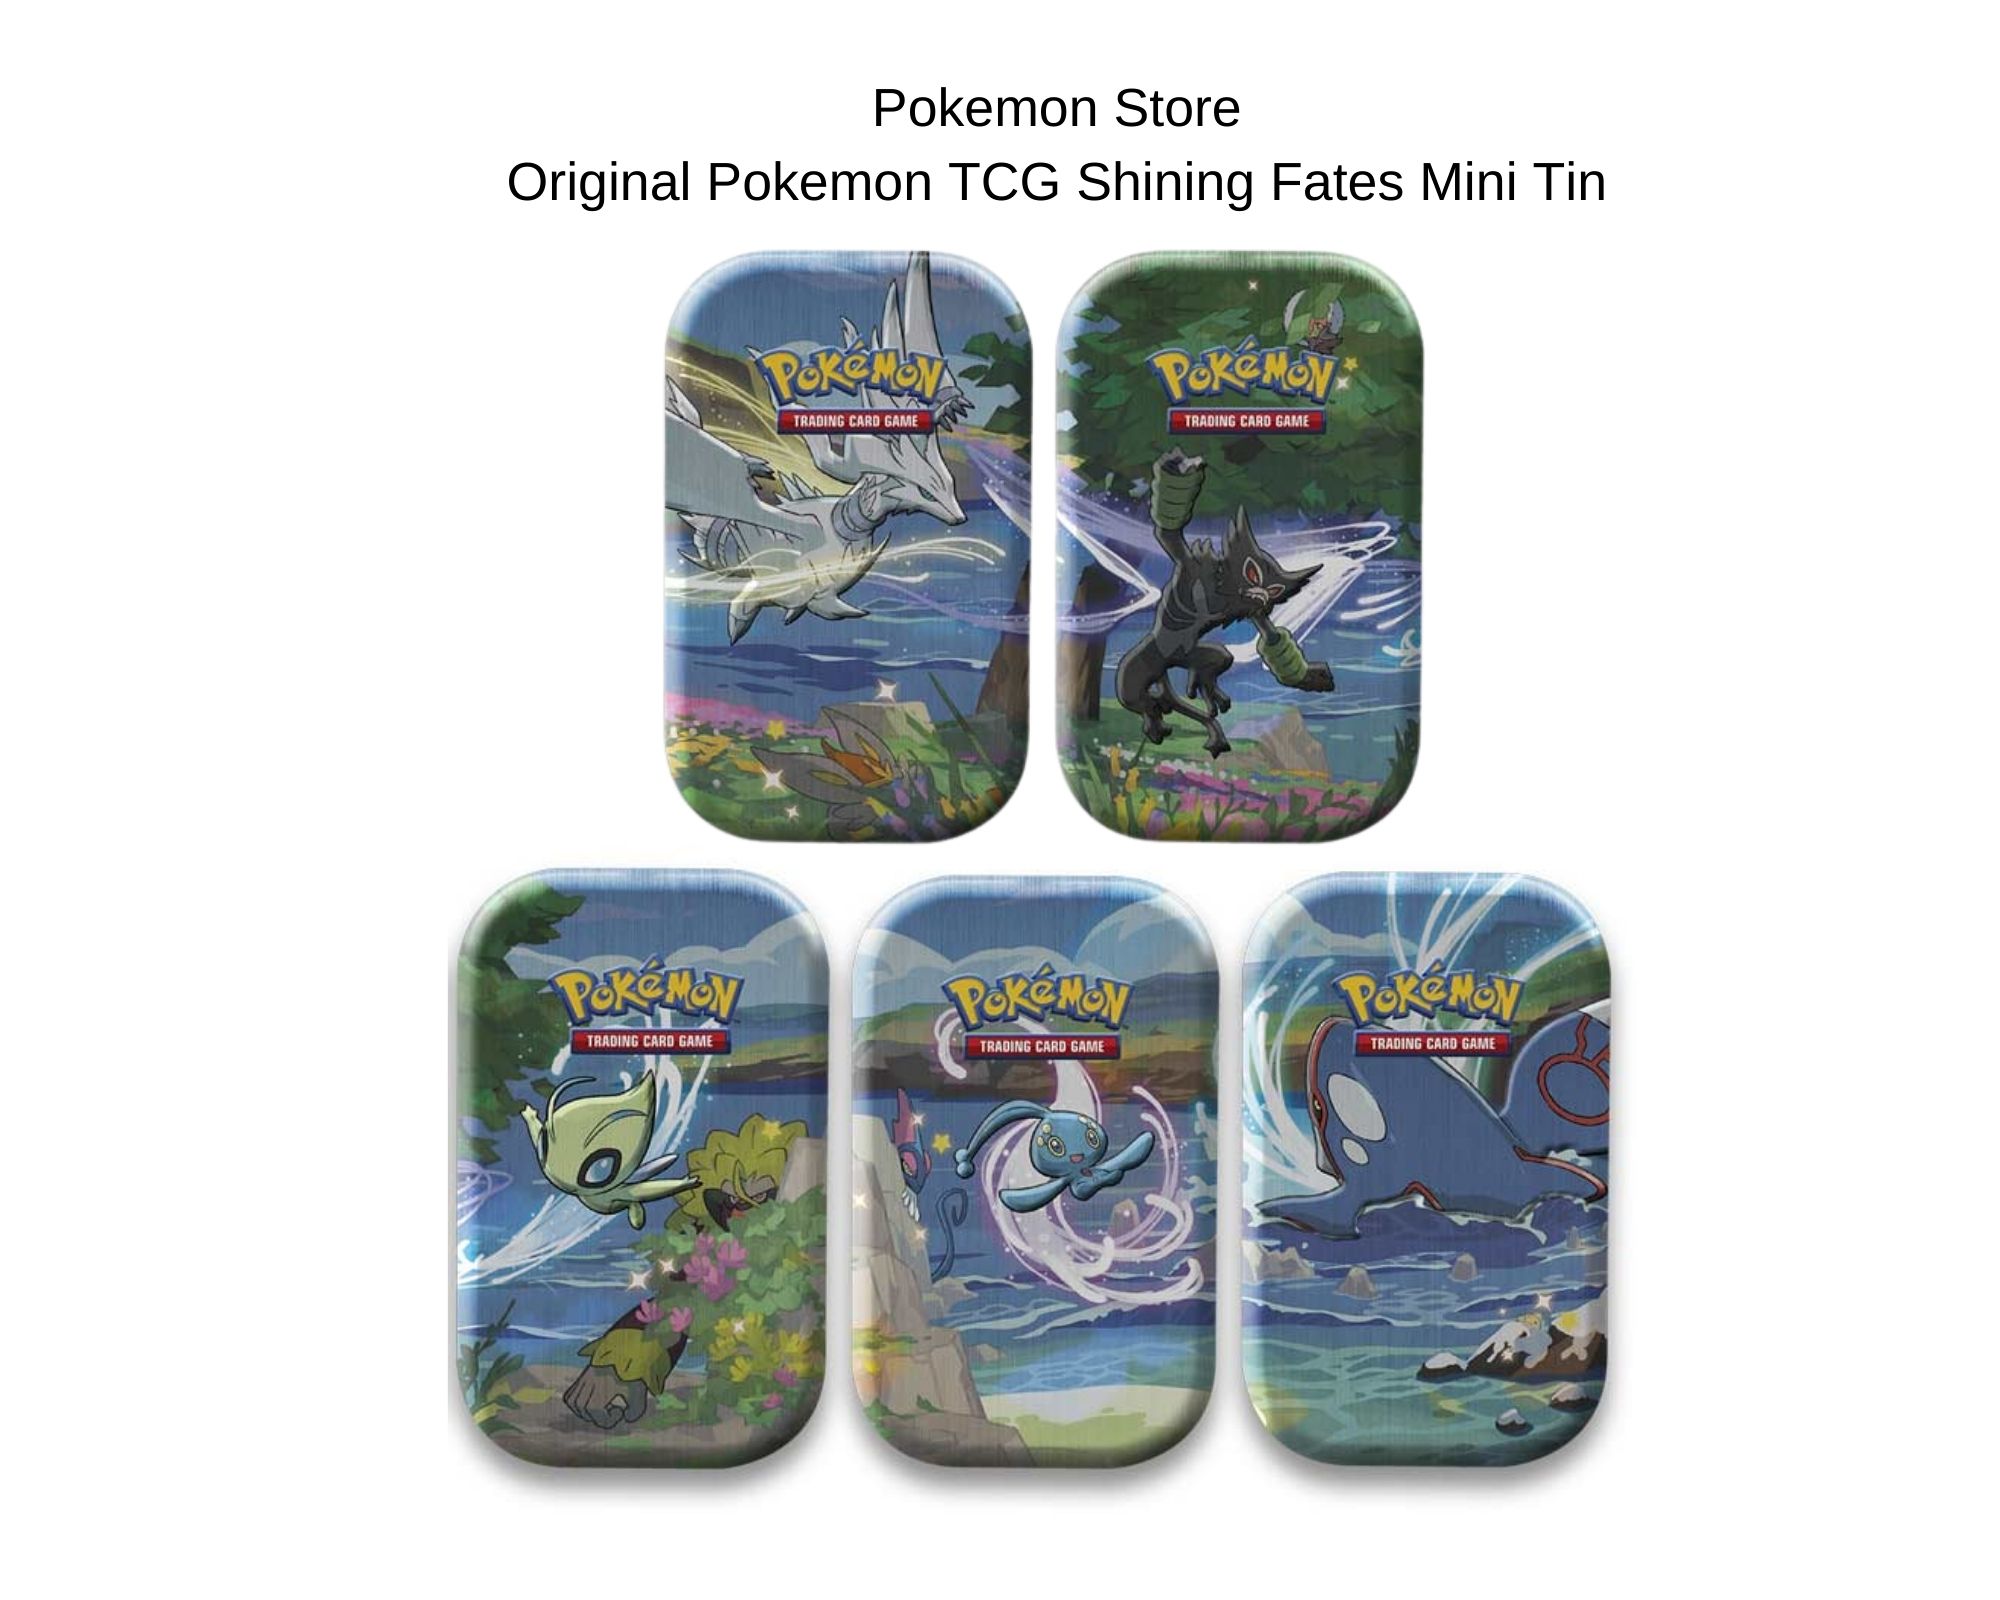 Pokémon Shining Fates Mini Tin 2 Pack for sale online